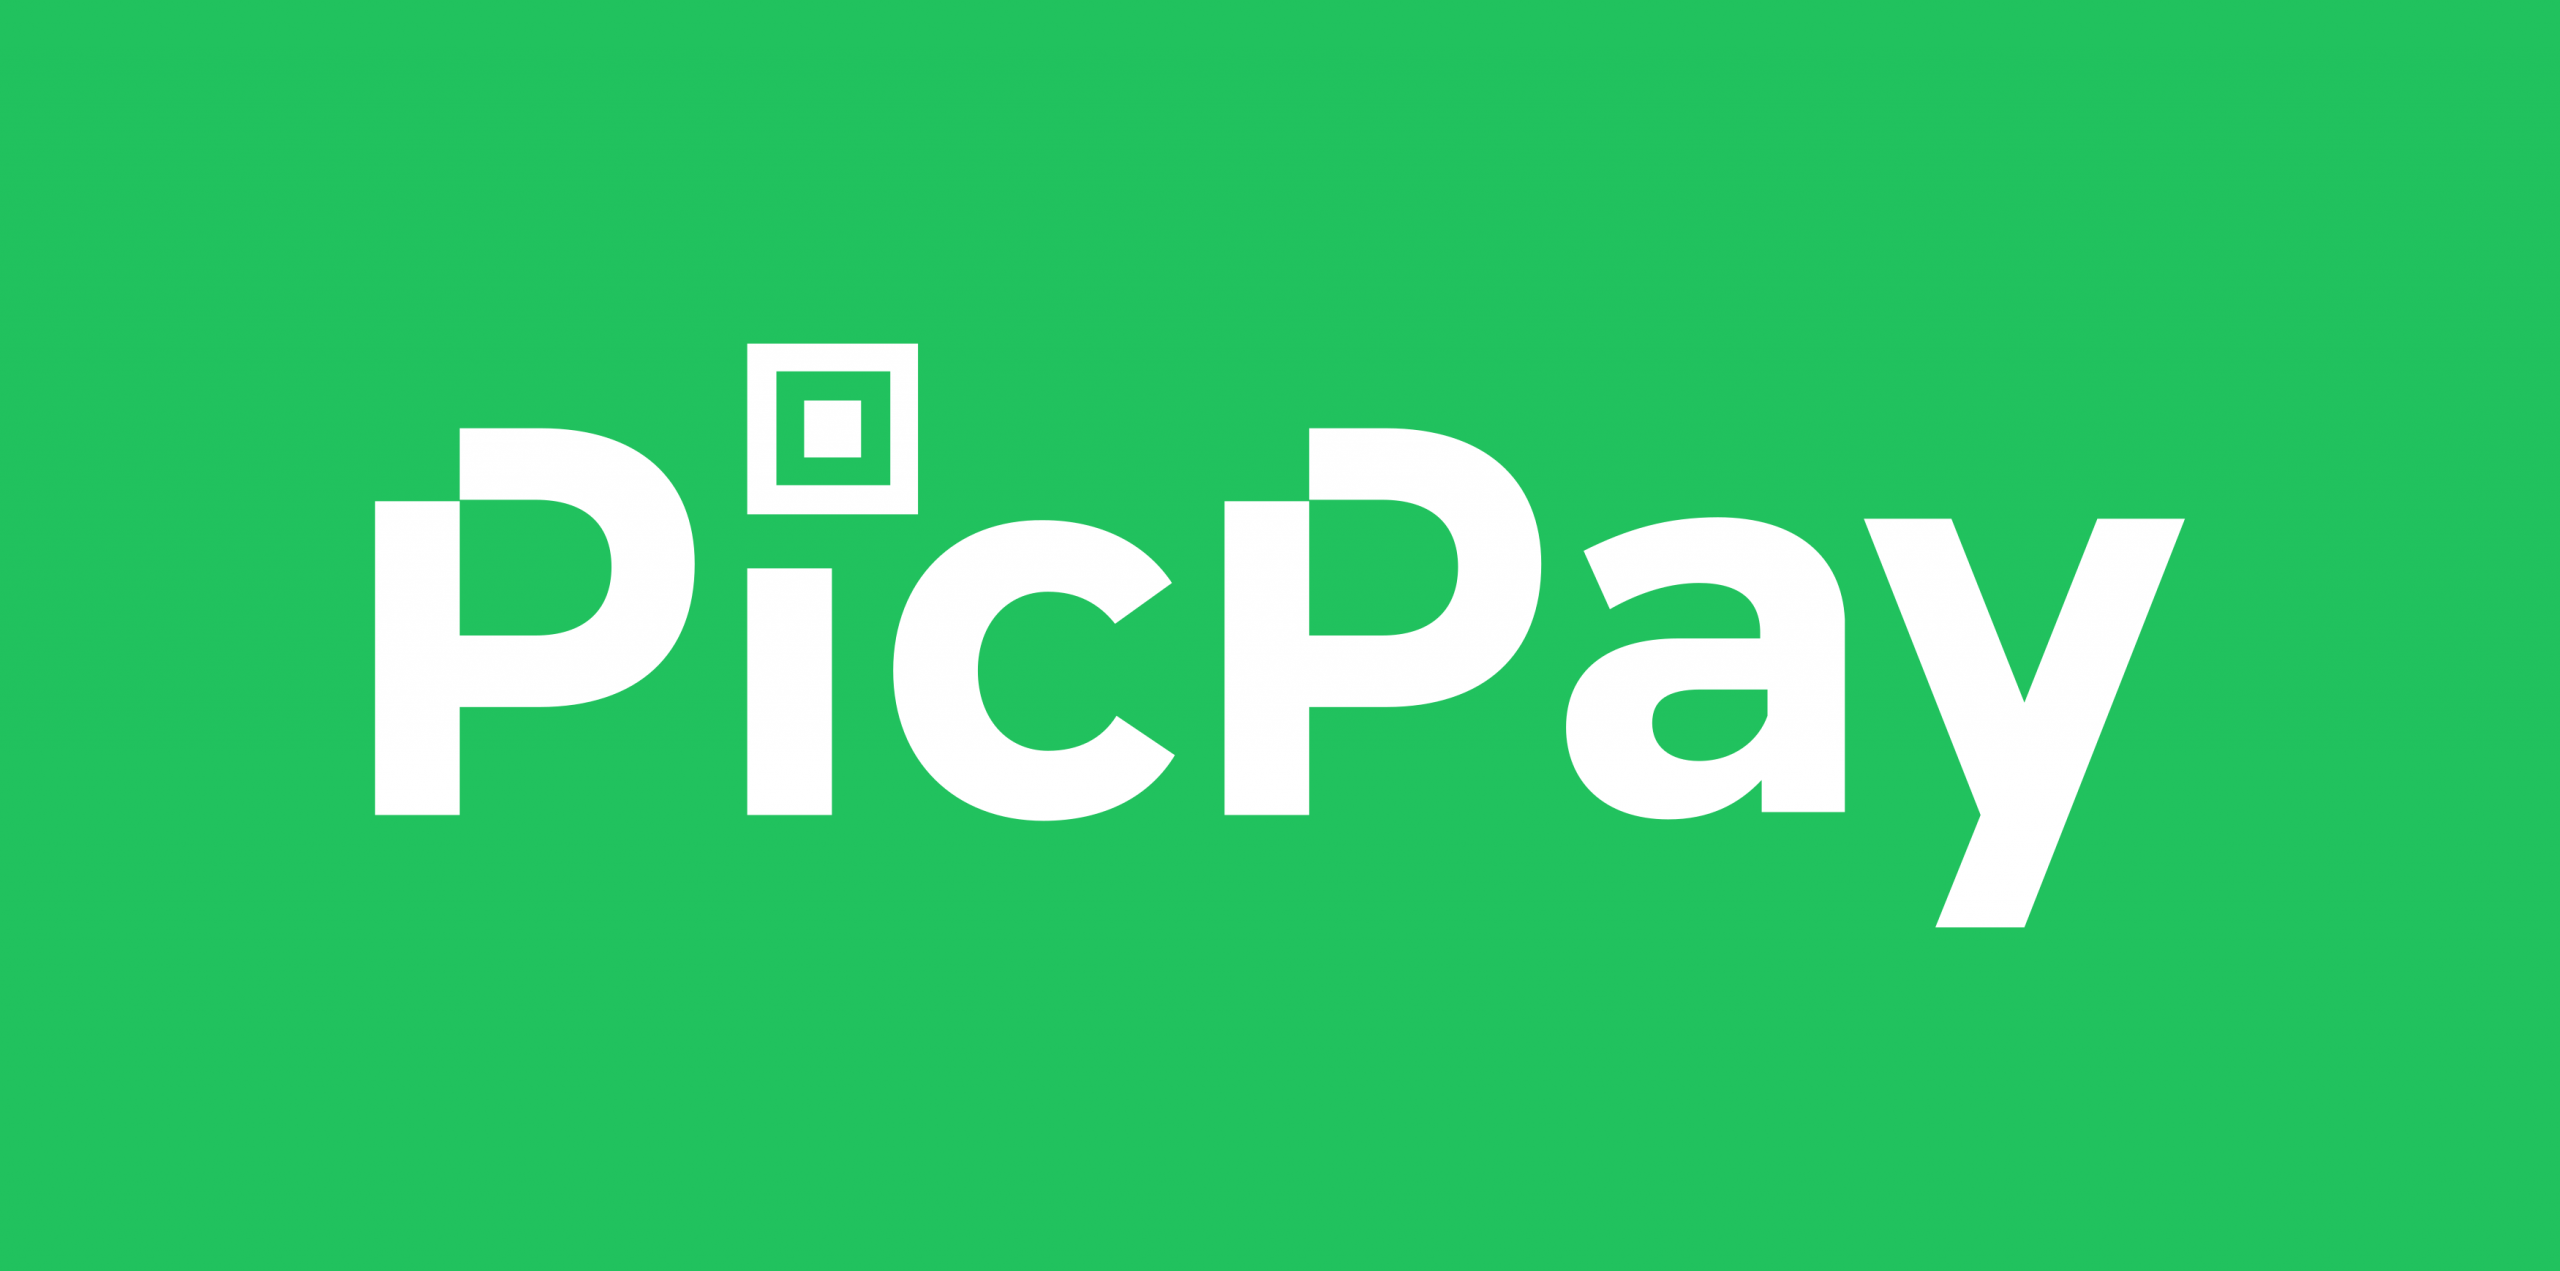 Adquira seu cartão de crédito PicPay e tenha cashback, anuidade ZERO e muitas vantagens. Fonte: PicPay.